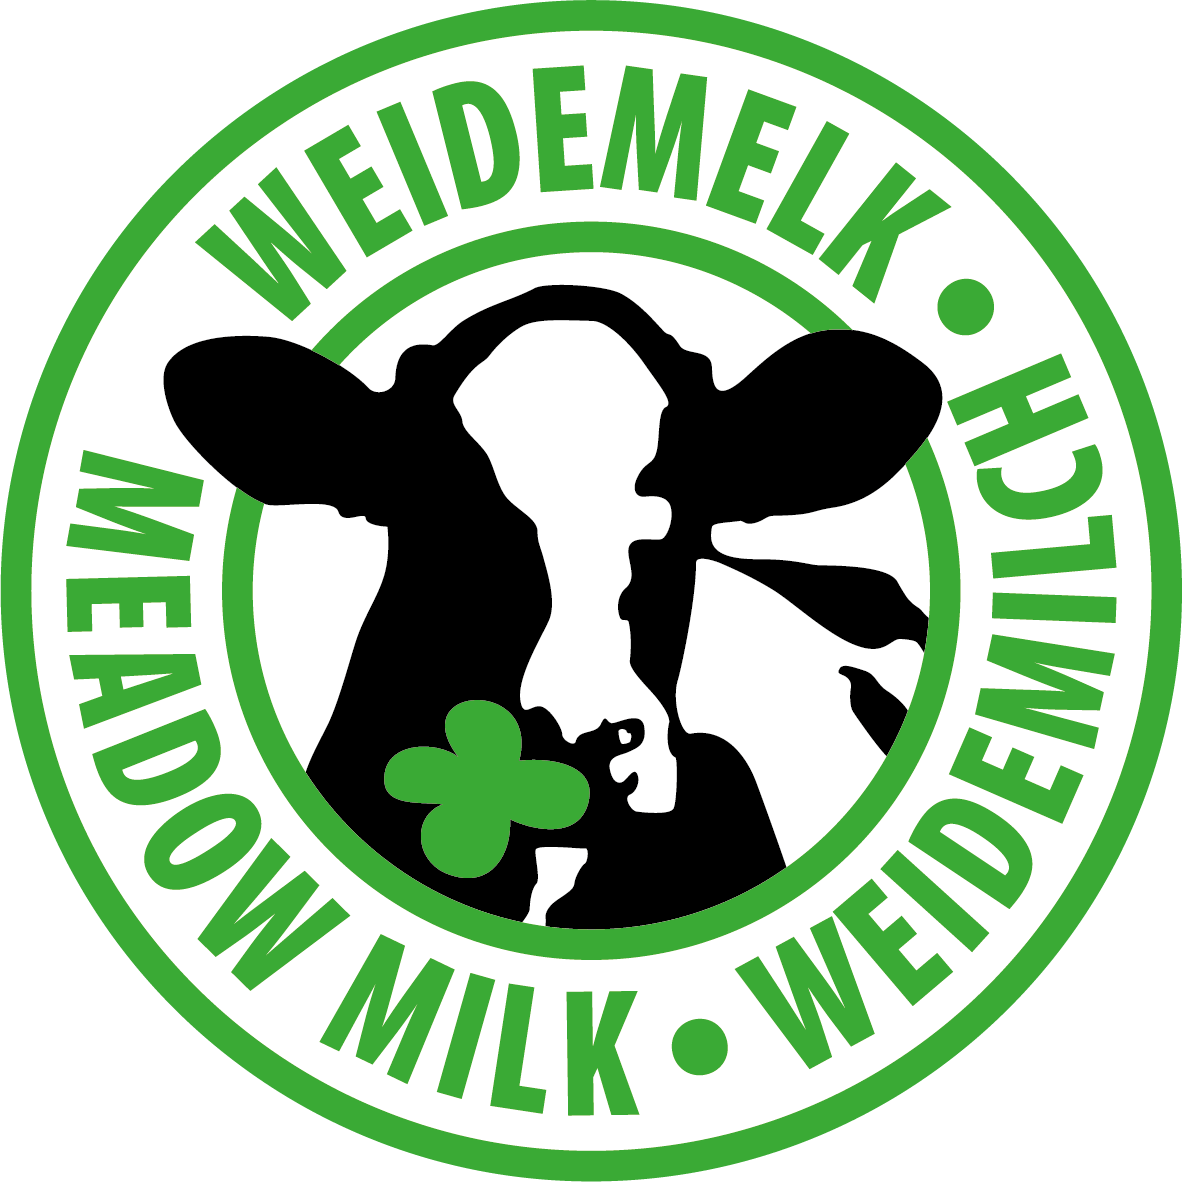 NL DE EN Weidemelk Weidemilch Meadow Milk